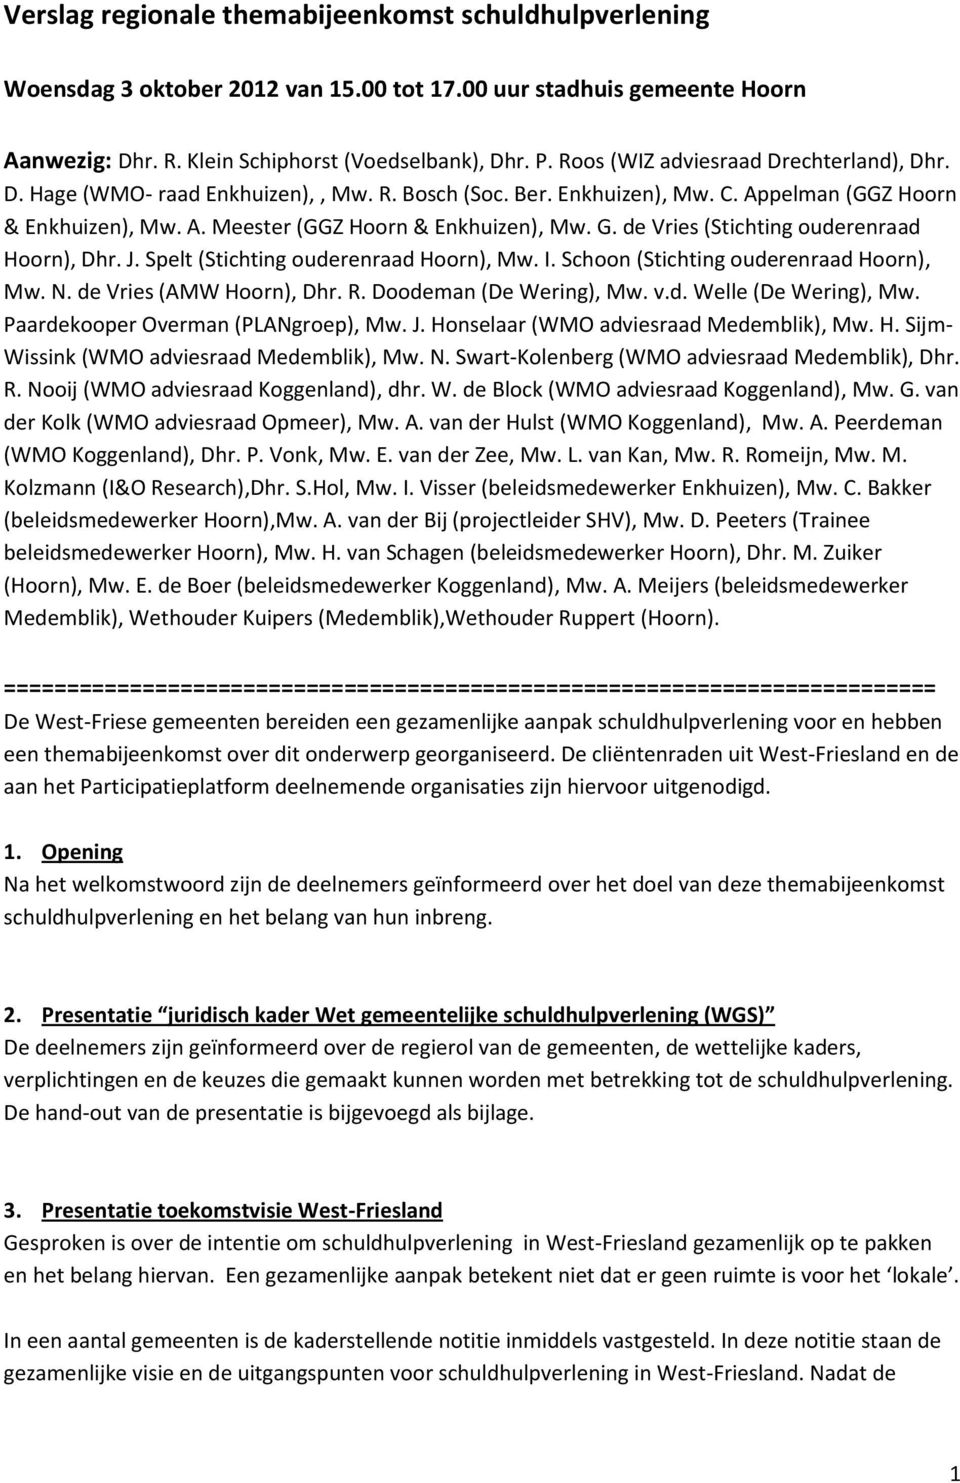 de Vries (Stichting ouderenraad Hoorn), Dhr. J. Spelt (Stichting ouderenraad Hoorn), Mw. I. Schoon (Stichting ouderenraad Hoorn), Mw. N. de Vries (AMW Hoorn), Dhr. R. Doodeman (De Wering), Mw. v.d. Welle (De Wering), Mw.